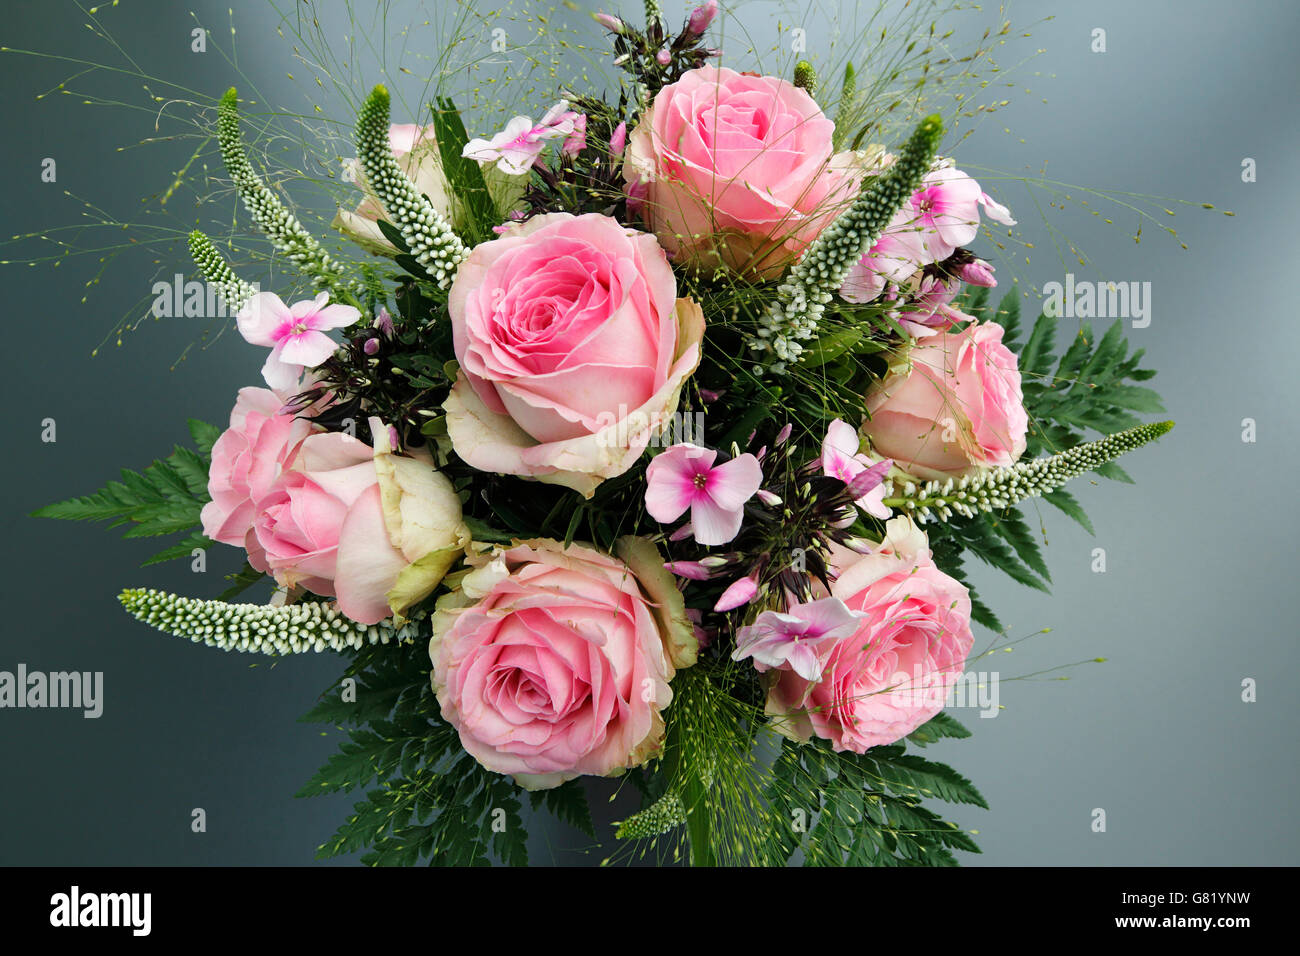 Natur, Pflanzen, Blumen, Blumenstrauss, Geburtstag, Geburtstagsstrauss, rosafarbene Rosen Stock Photo